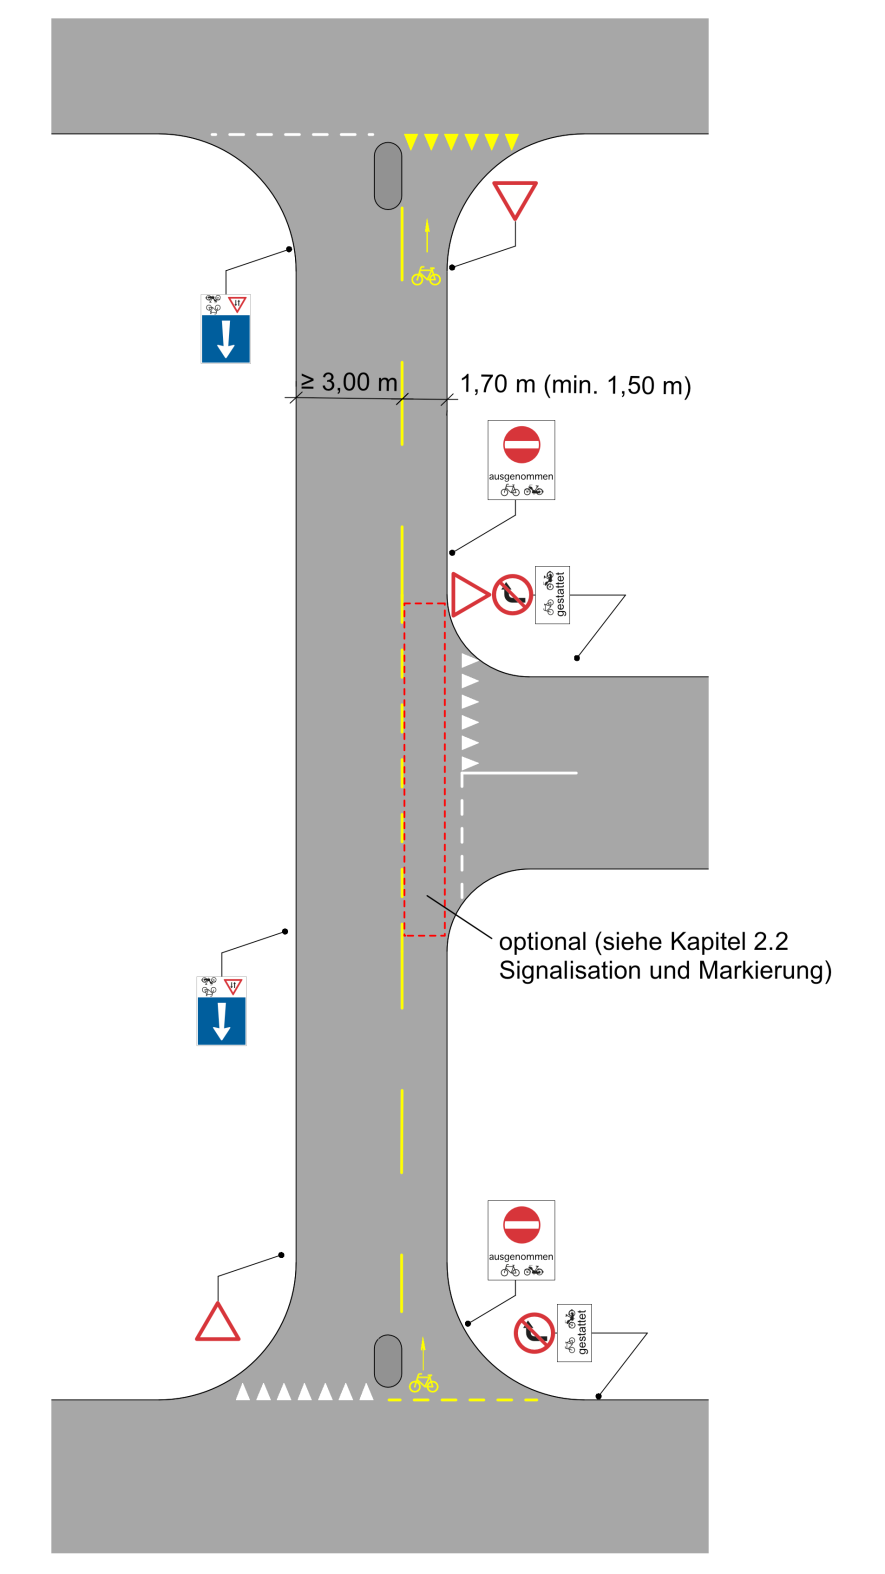 5.2 Einbahnstrasse Bei Einbahnstrassen mit Velofahrenden im Gegenverkehr sollen die Vortrittsverhältnisse bei Einmündungen und Kreuzungen geregelt sein. Bei Sammelstrassen wird ein mindestens 1.